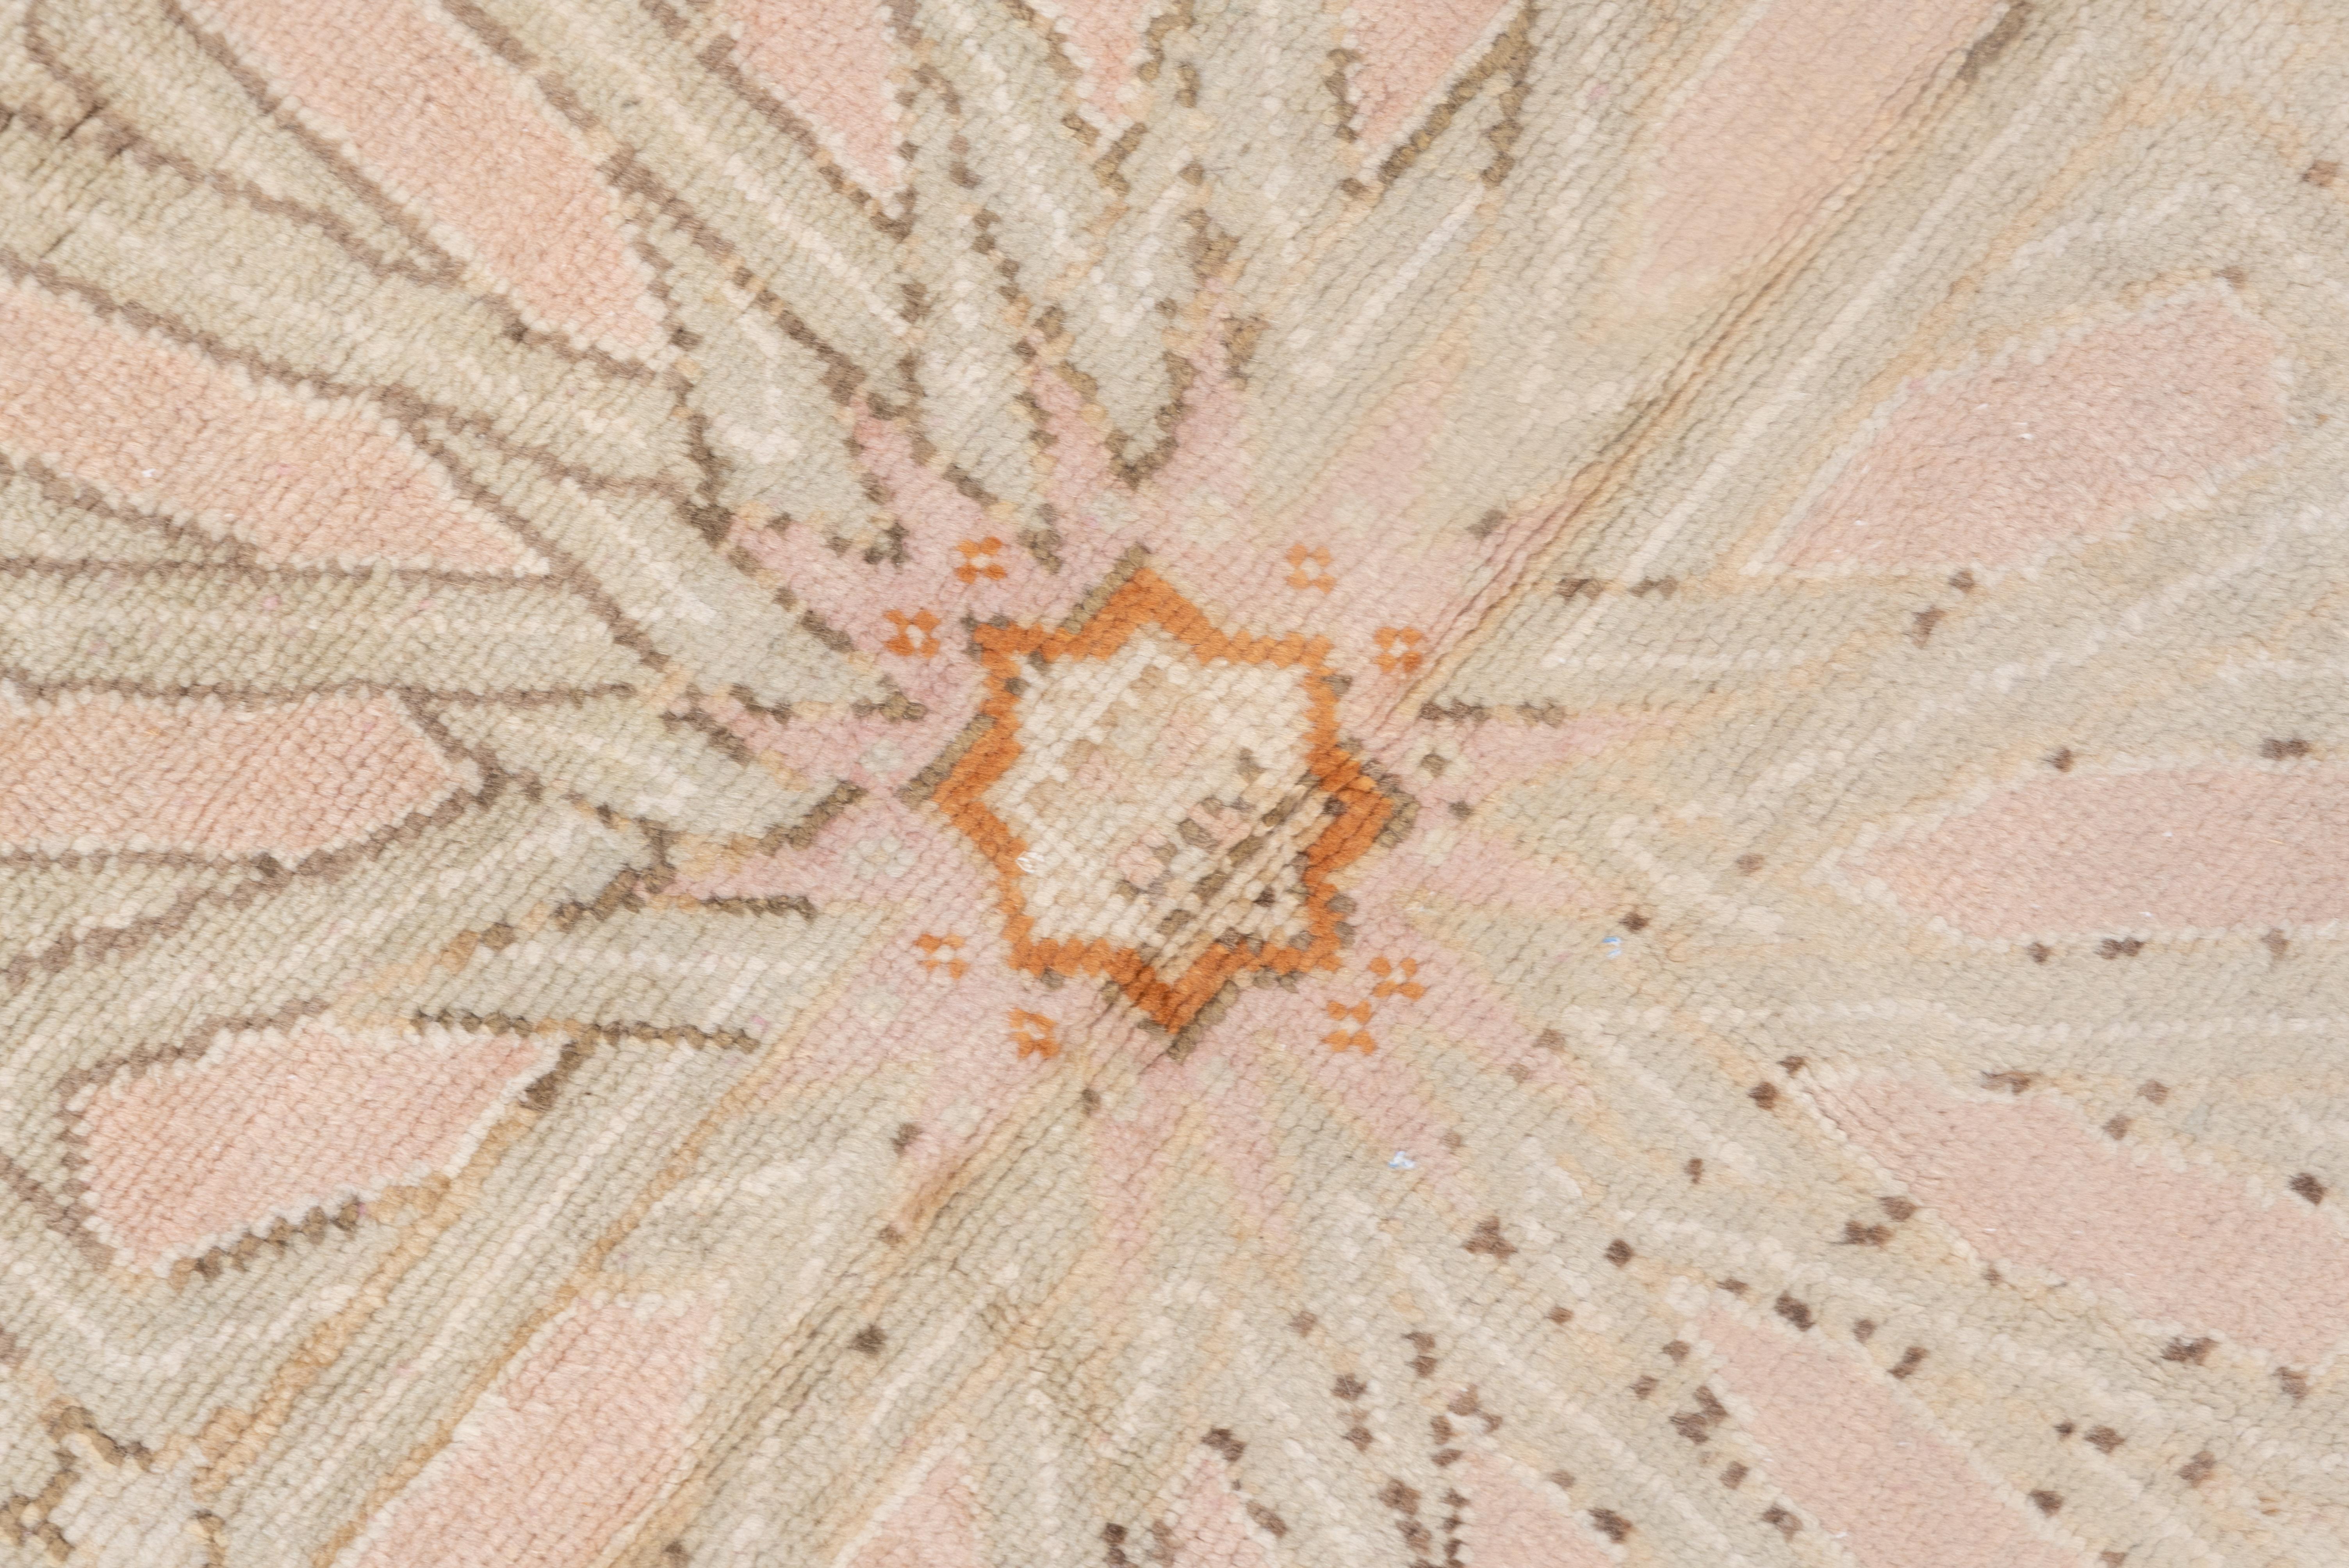 Wool Massive Antique Turkish Oushak Mansion Carpet, Pink, Ivory & Orange Tones For Sale